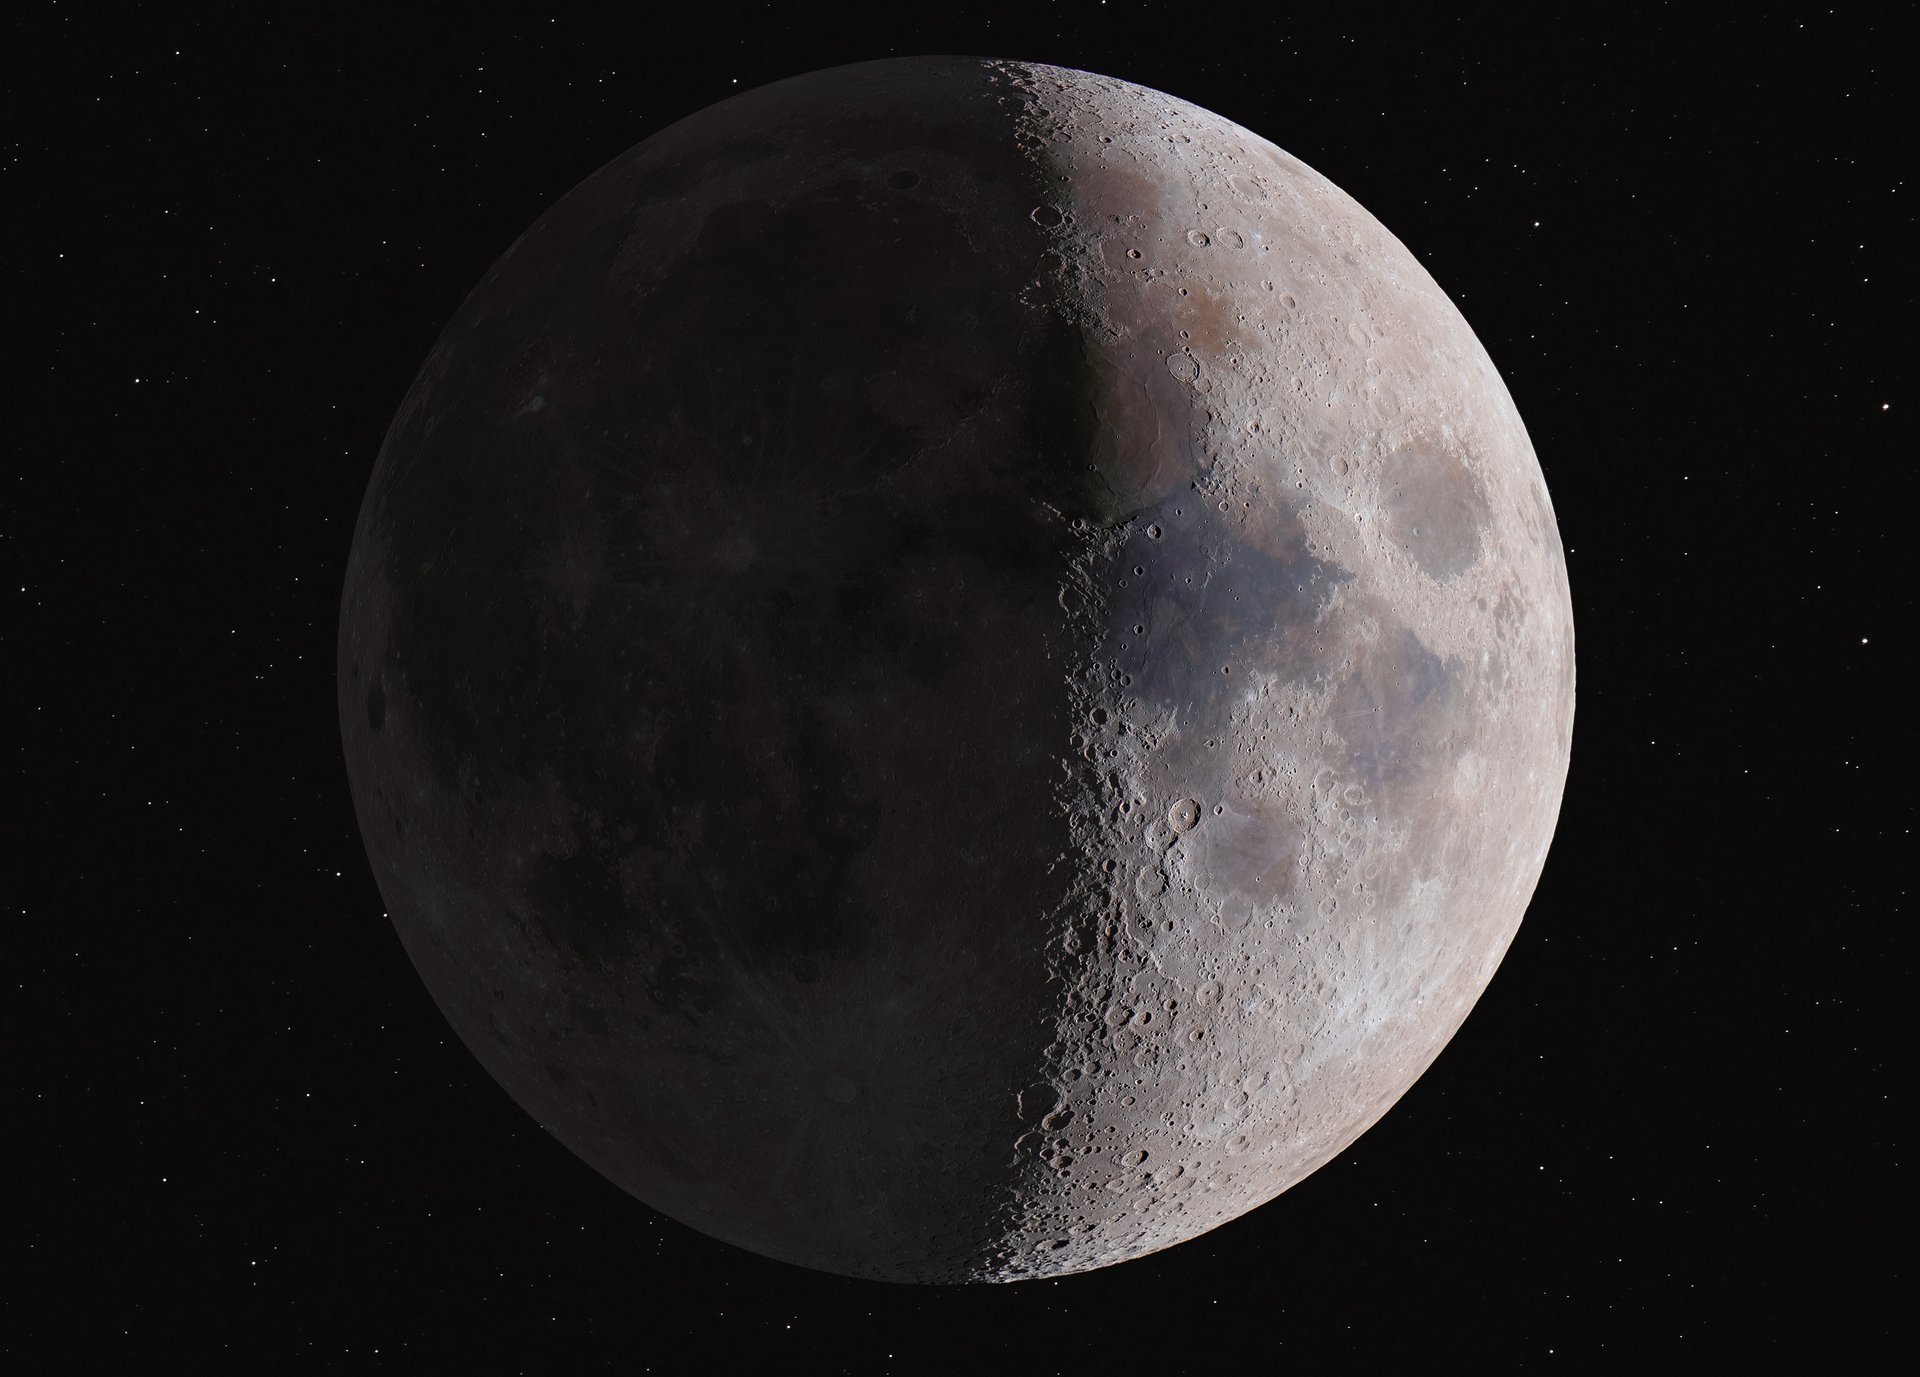 Nur eine Seite des Mondes ist hell beleuchtet, auf ihr sind Mondkrater zu sehen. Die andere Seite ist dunkel.